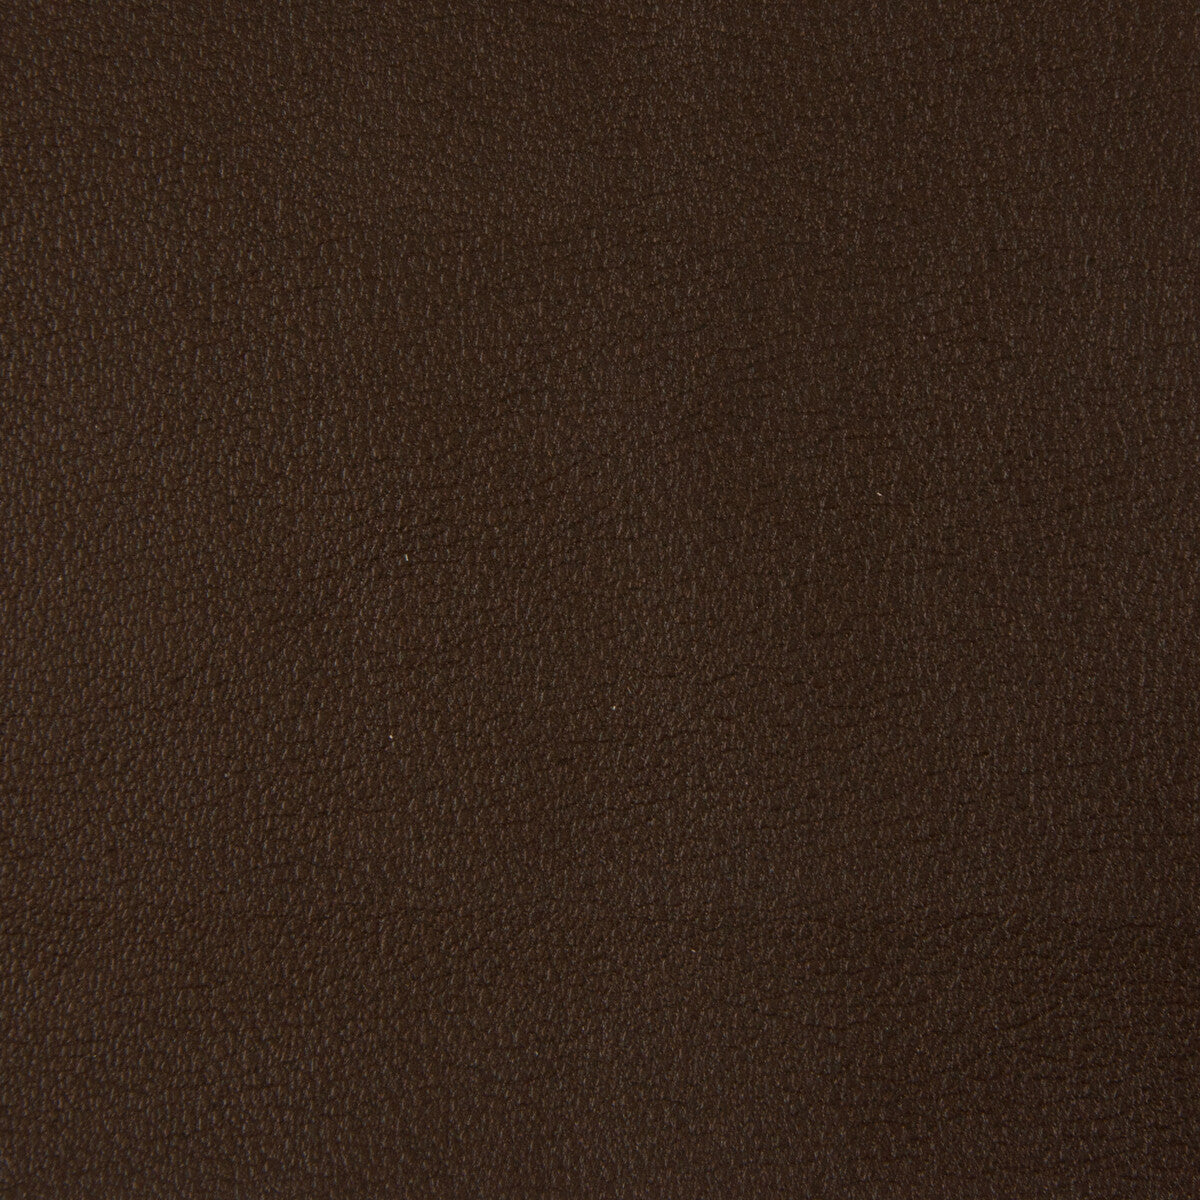 Kravet Smart fabric in newt-66 color - pattern NEWT.66.0 - by Kravet Smart